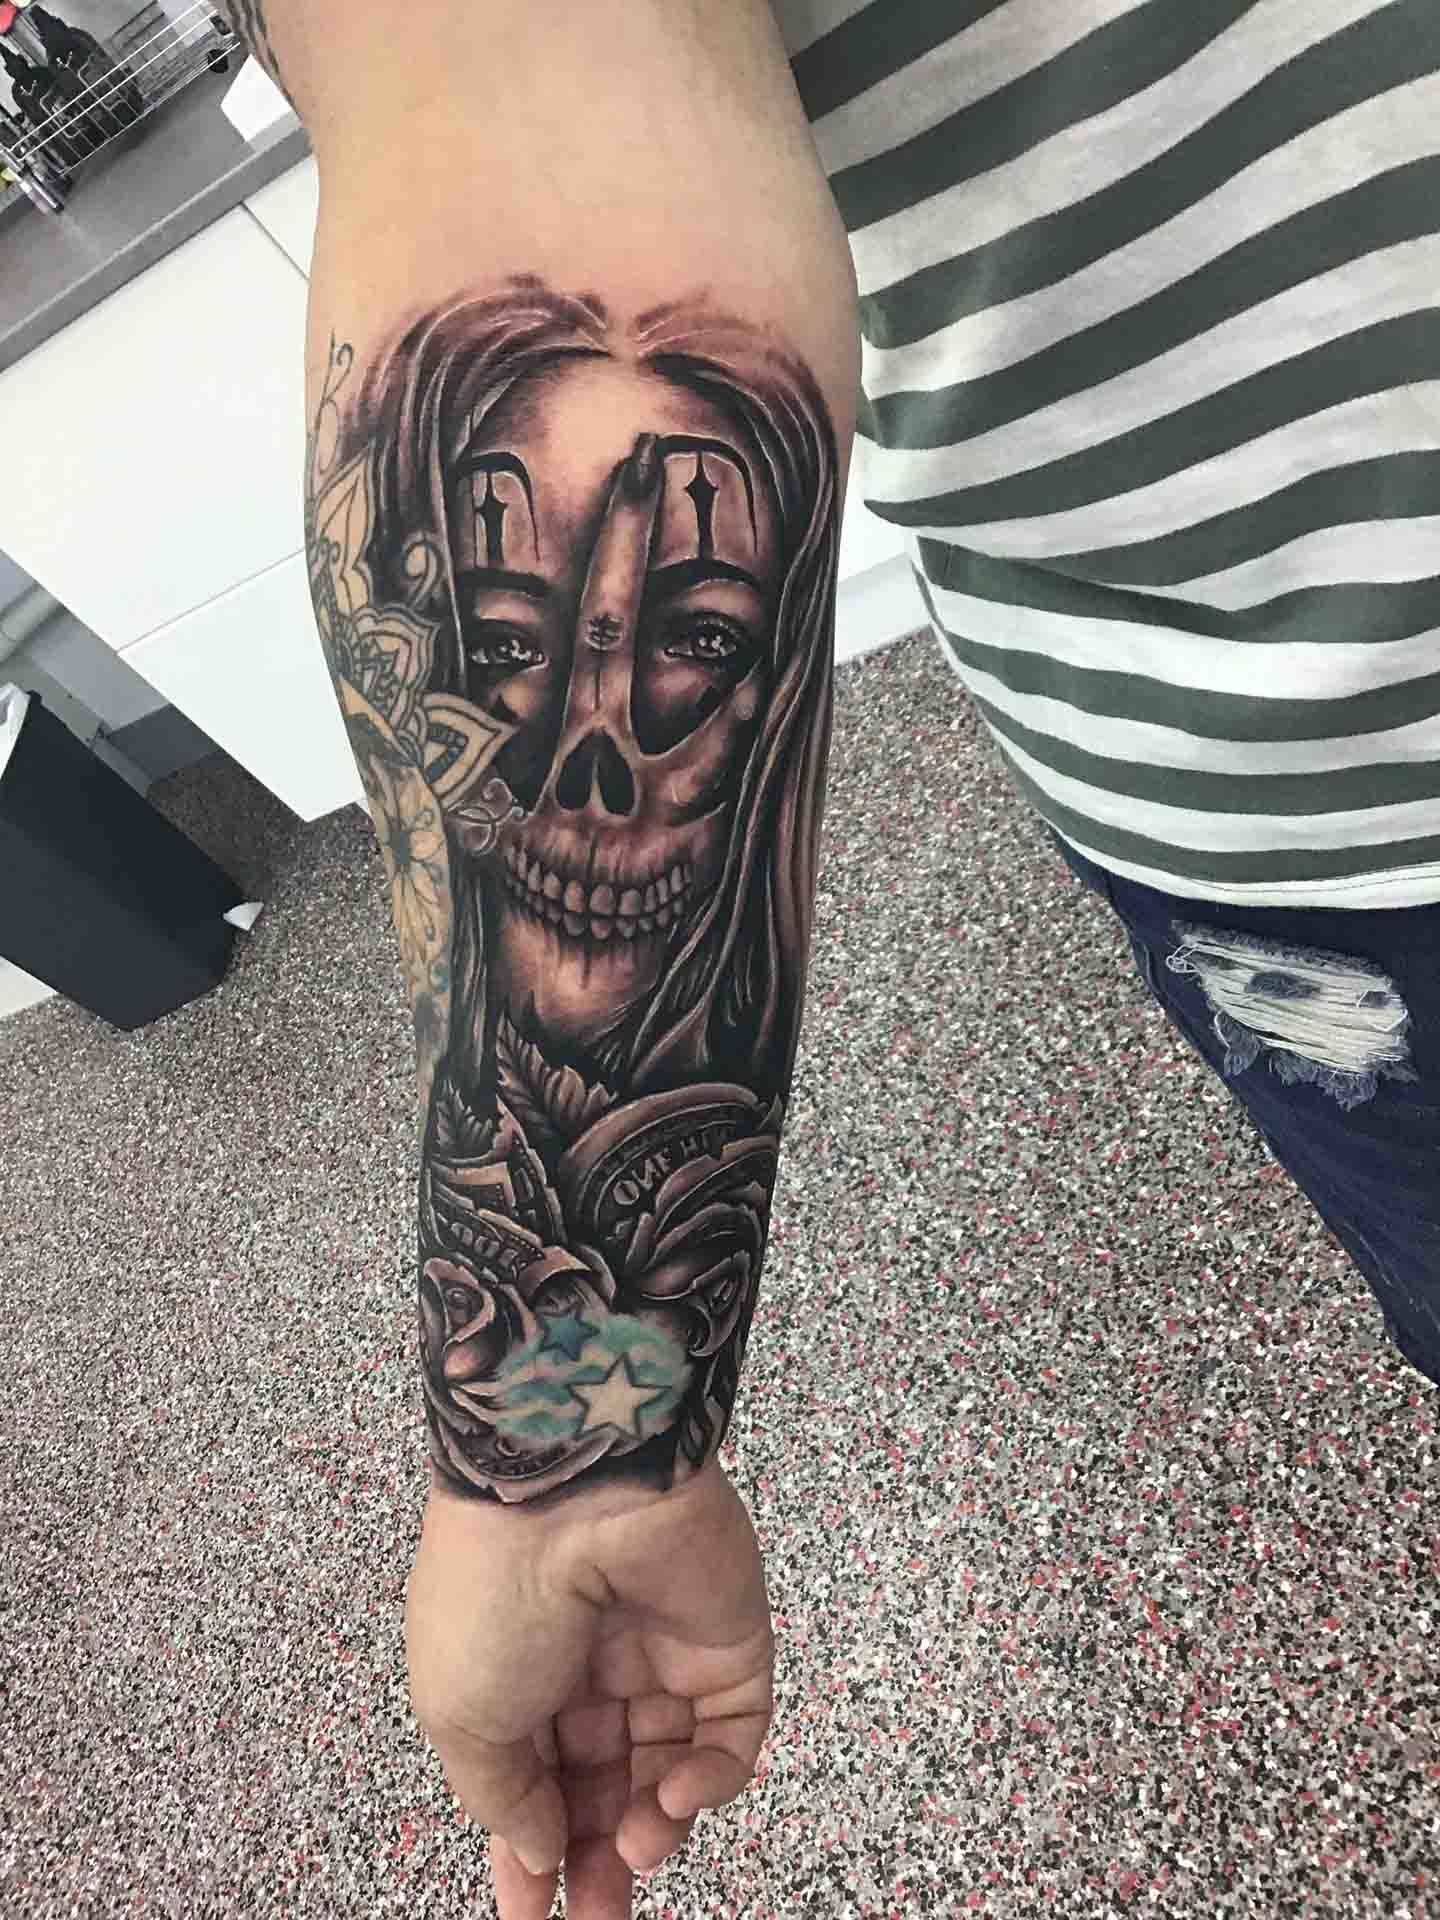 Face and Skull Tattoo on Arm - Tattoo Studio in Kawana, QLD